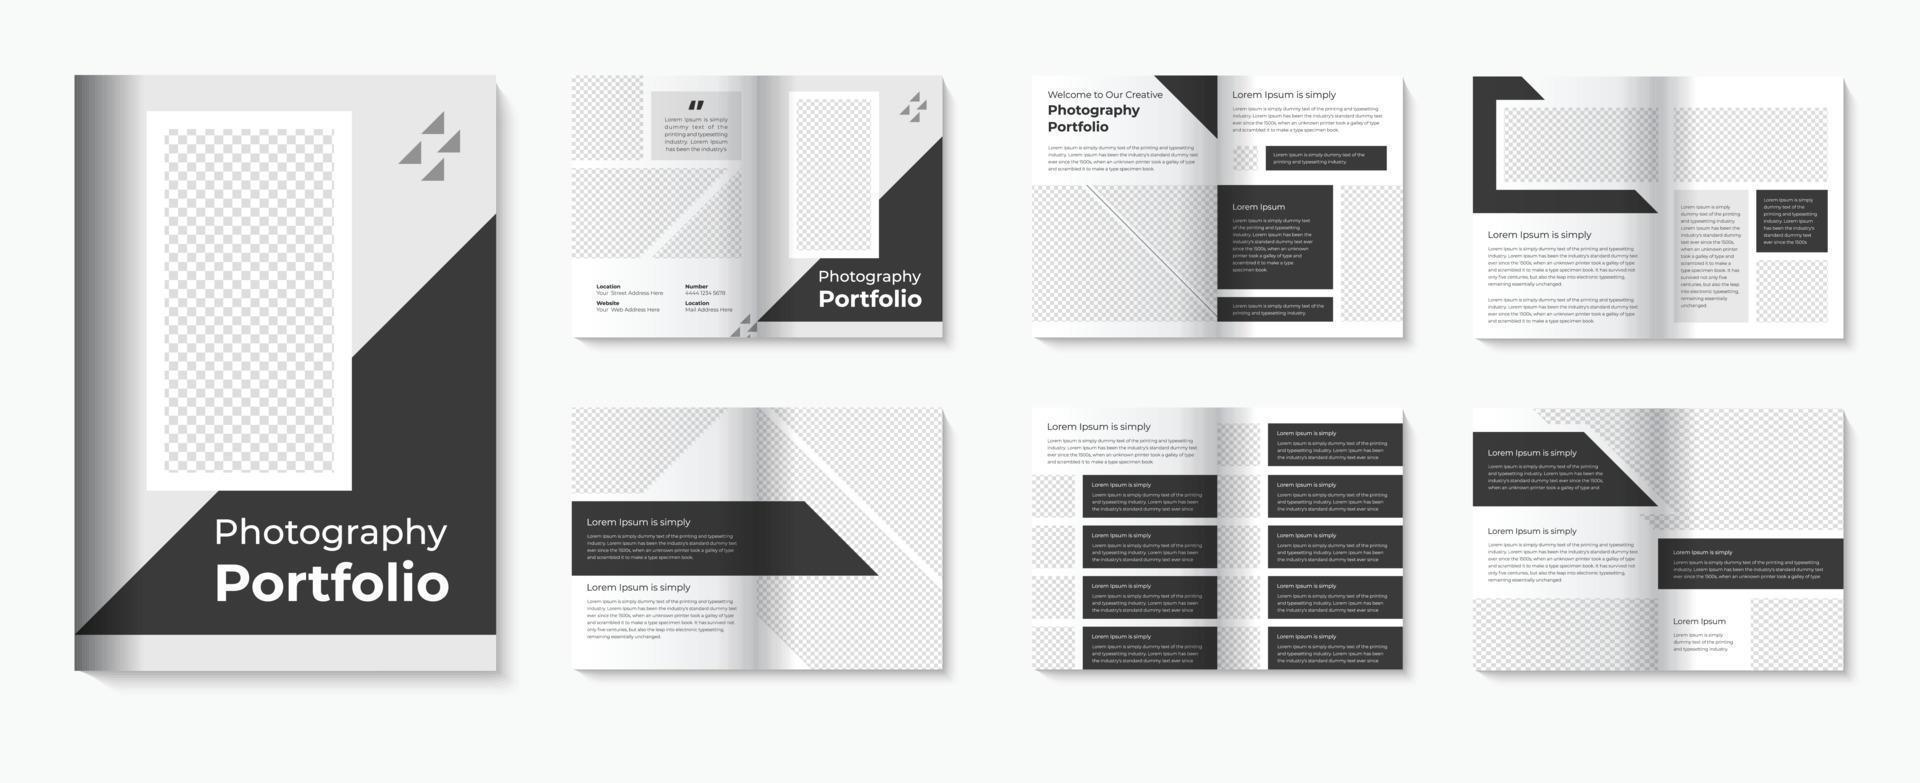 fotografie portefeuille sjabloon en brochure ontwerp voor architectuur met interieur portefeuille pro downloaden vector